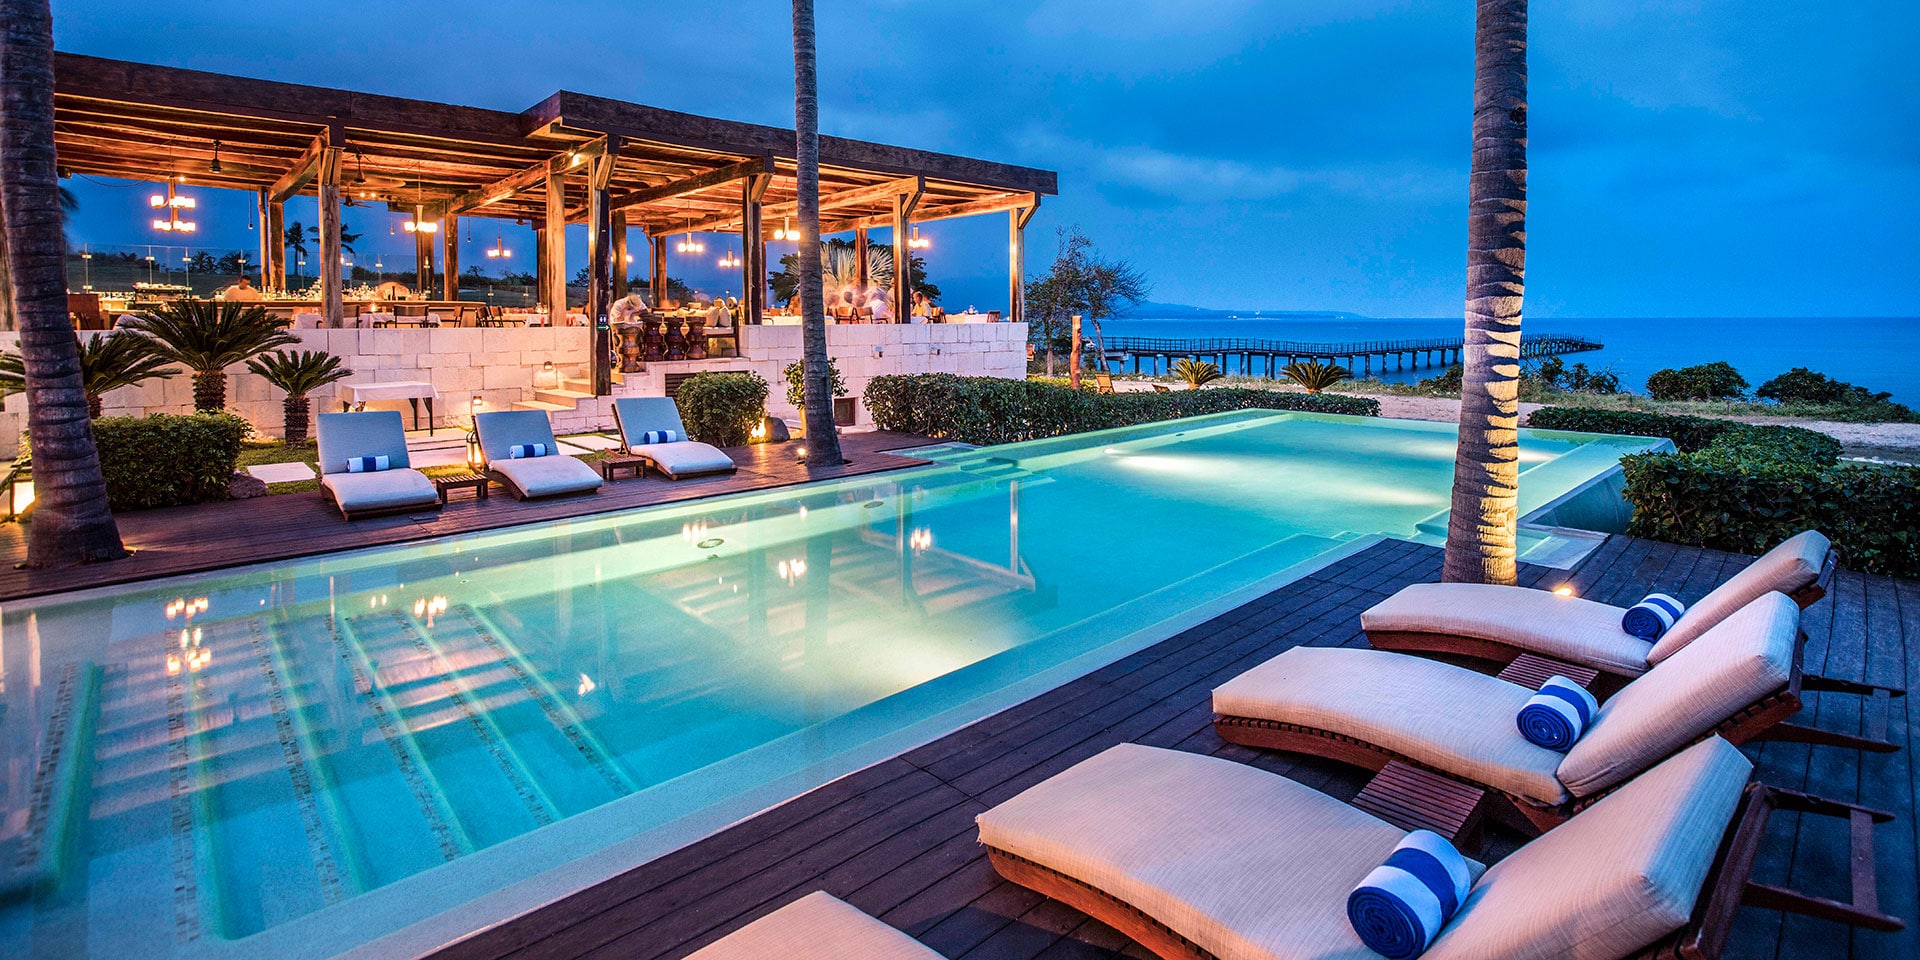 6 Ways to Let Go and Relax in Punta de Mita | Marriott Bonvoy Traveler